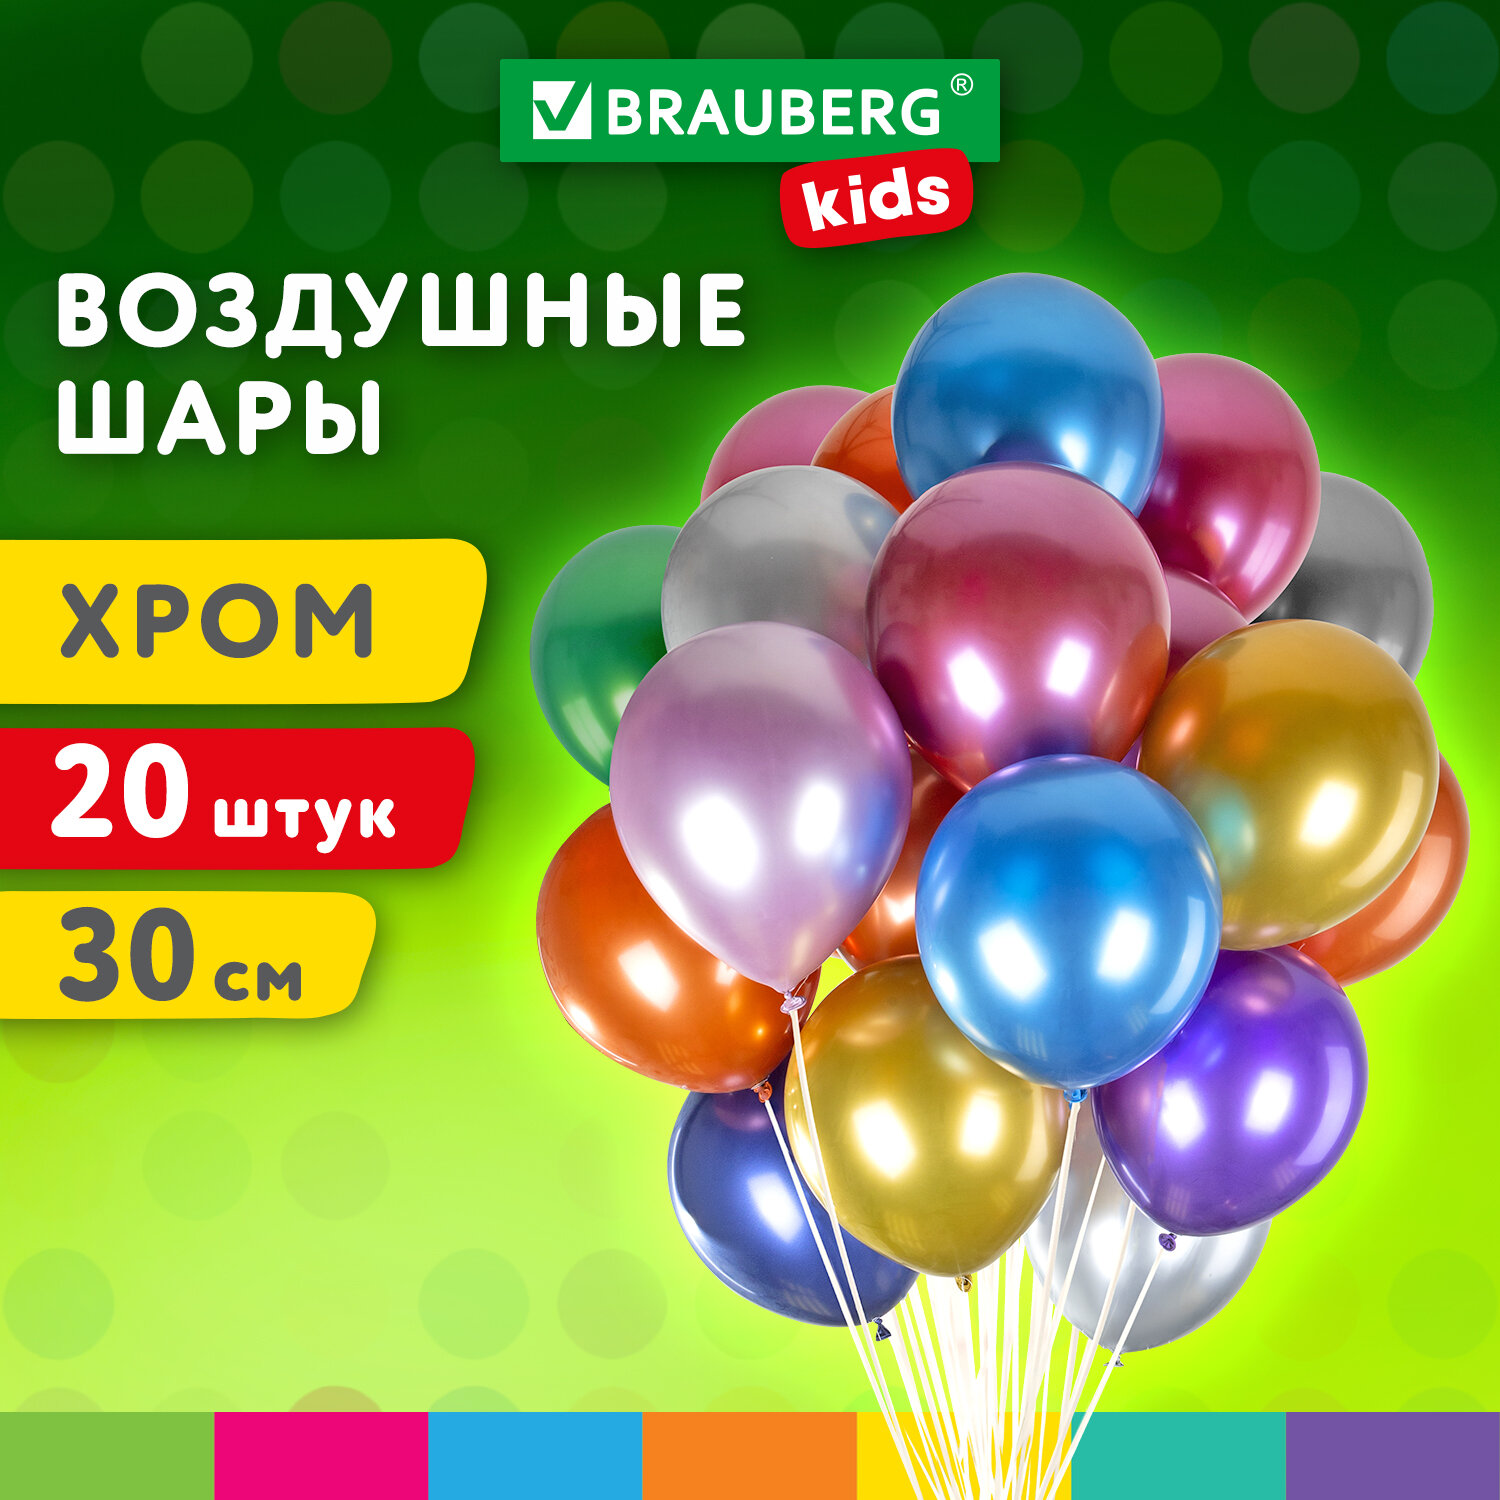 Шарики воздушные Brauberg Kids 591887 набор на день рождения, для фотозоны, 30 см, 20 штук воздушные шарики belbal 14 улыбка 50 штук